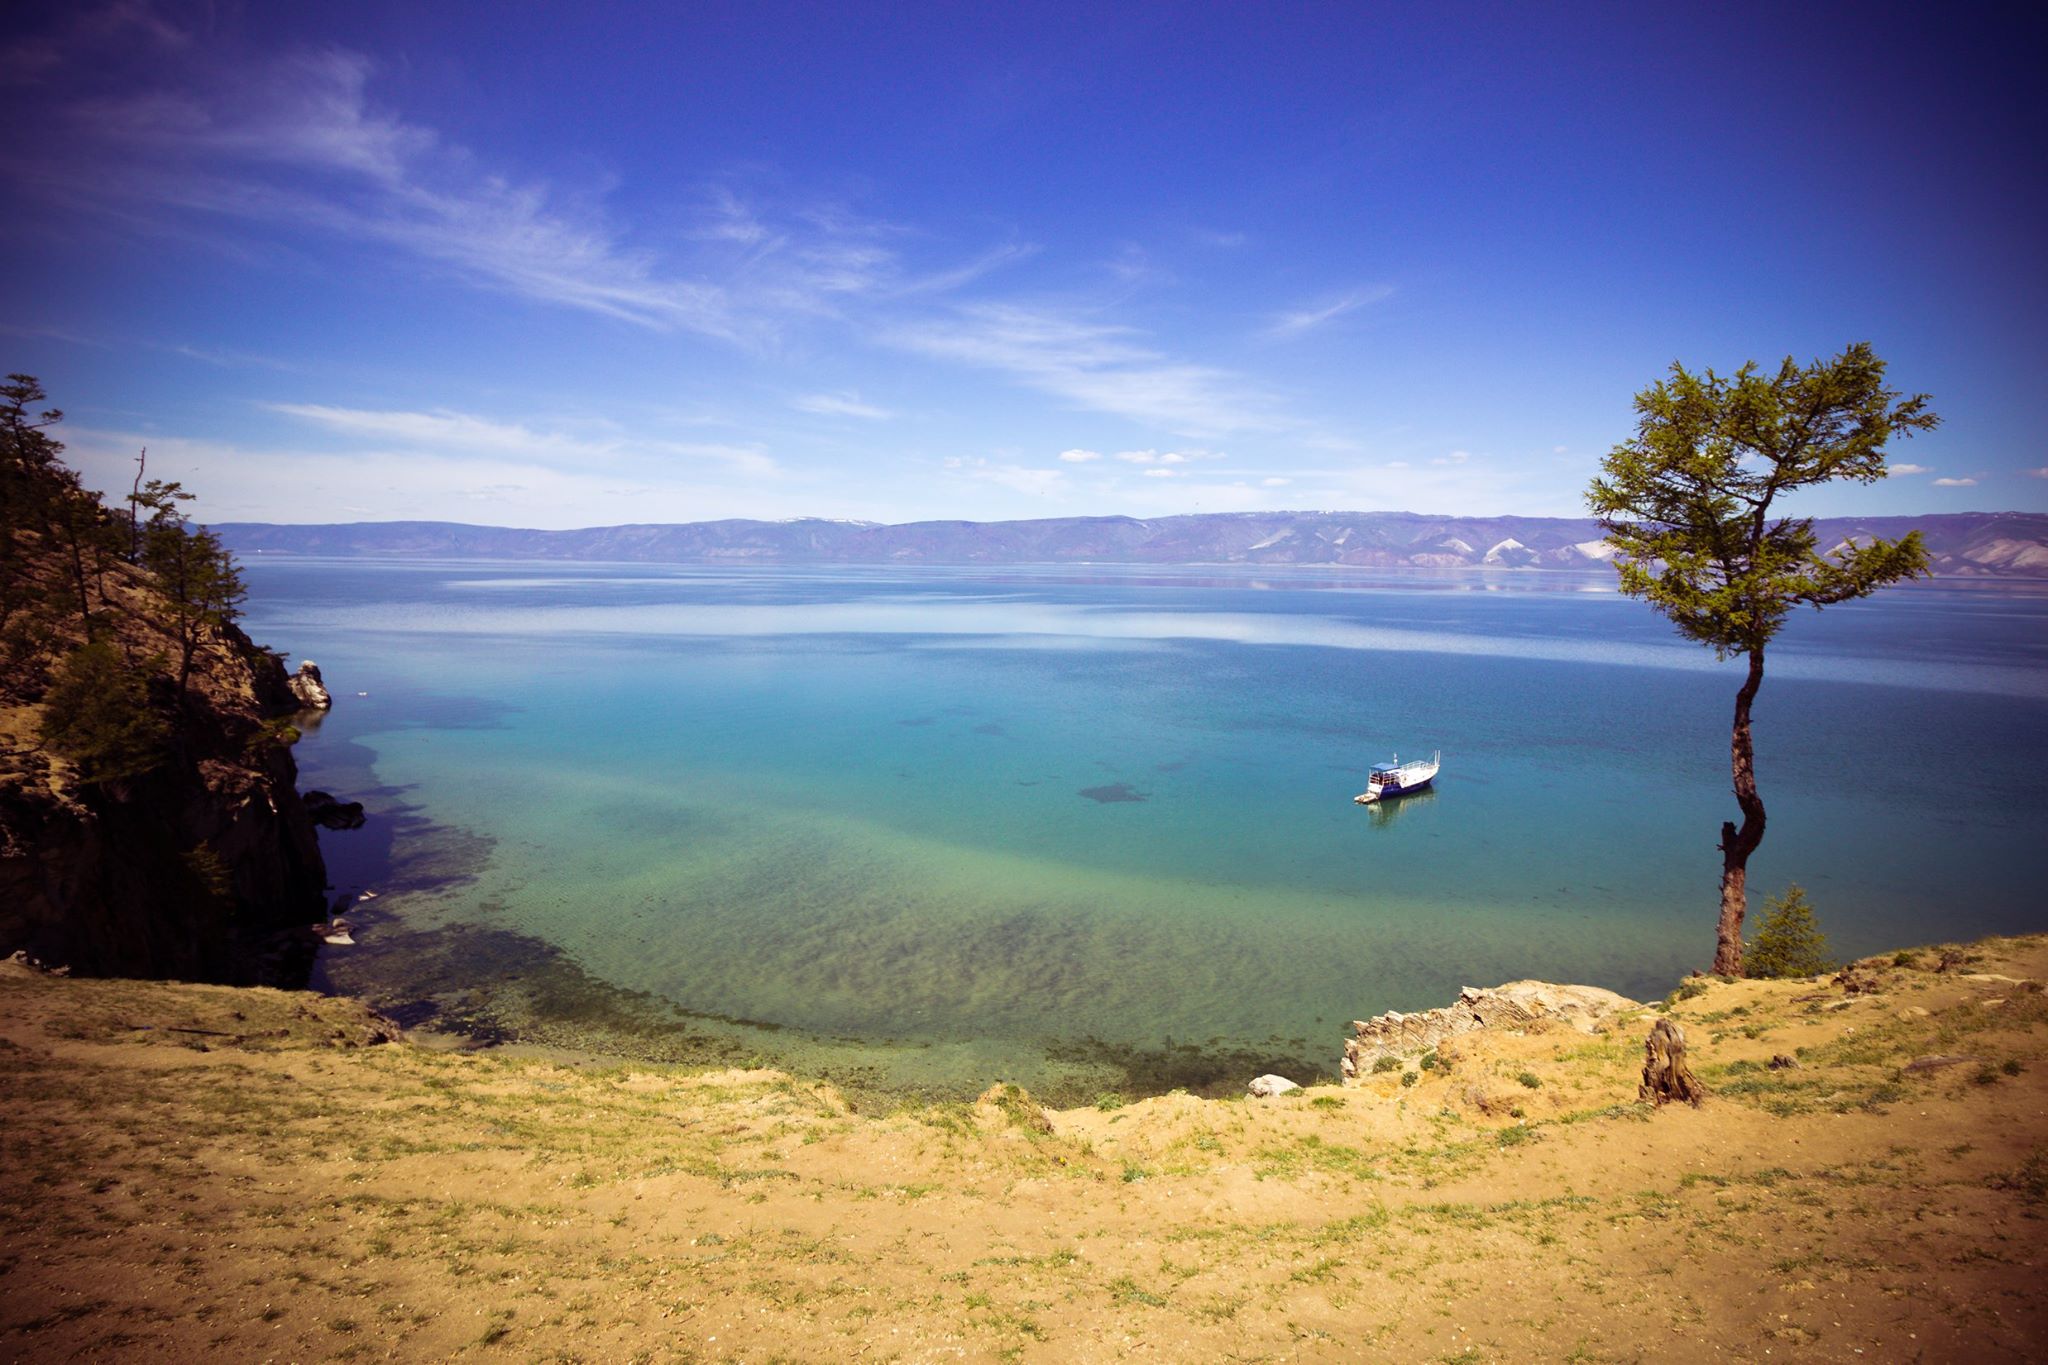 Бајкал и његова околина представљају станиште за животињске врсте које се само овде могу наћи, а од 1996. године језеро је на листи Светске баштине УНЕСКО-а.